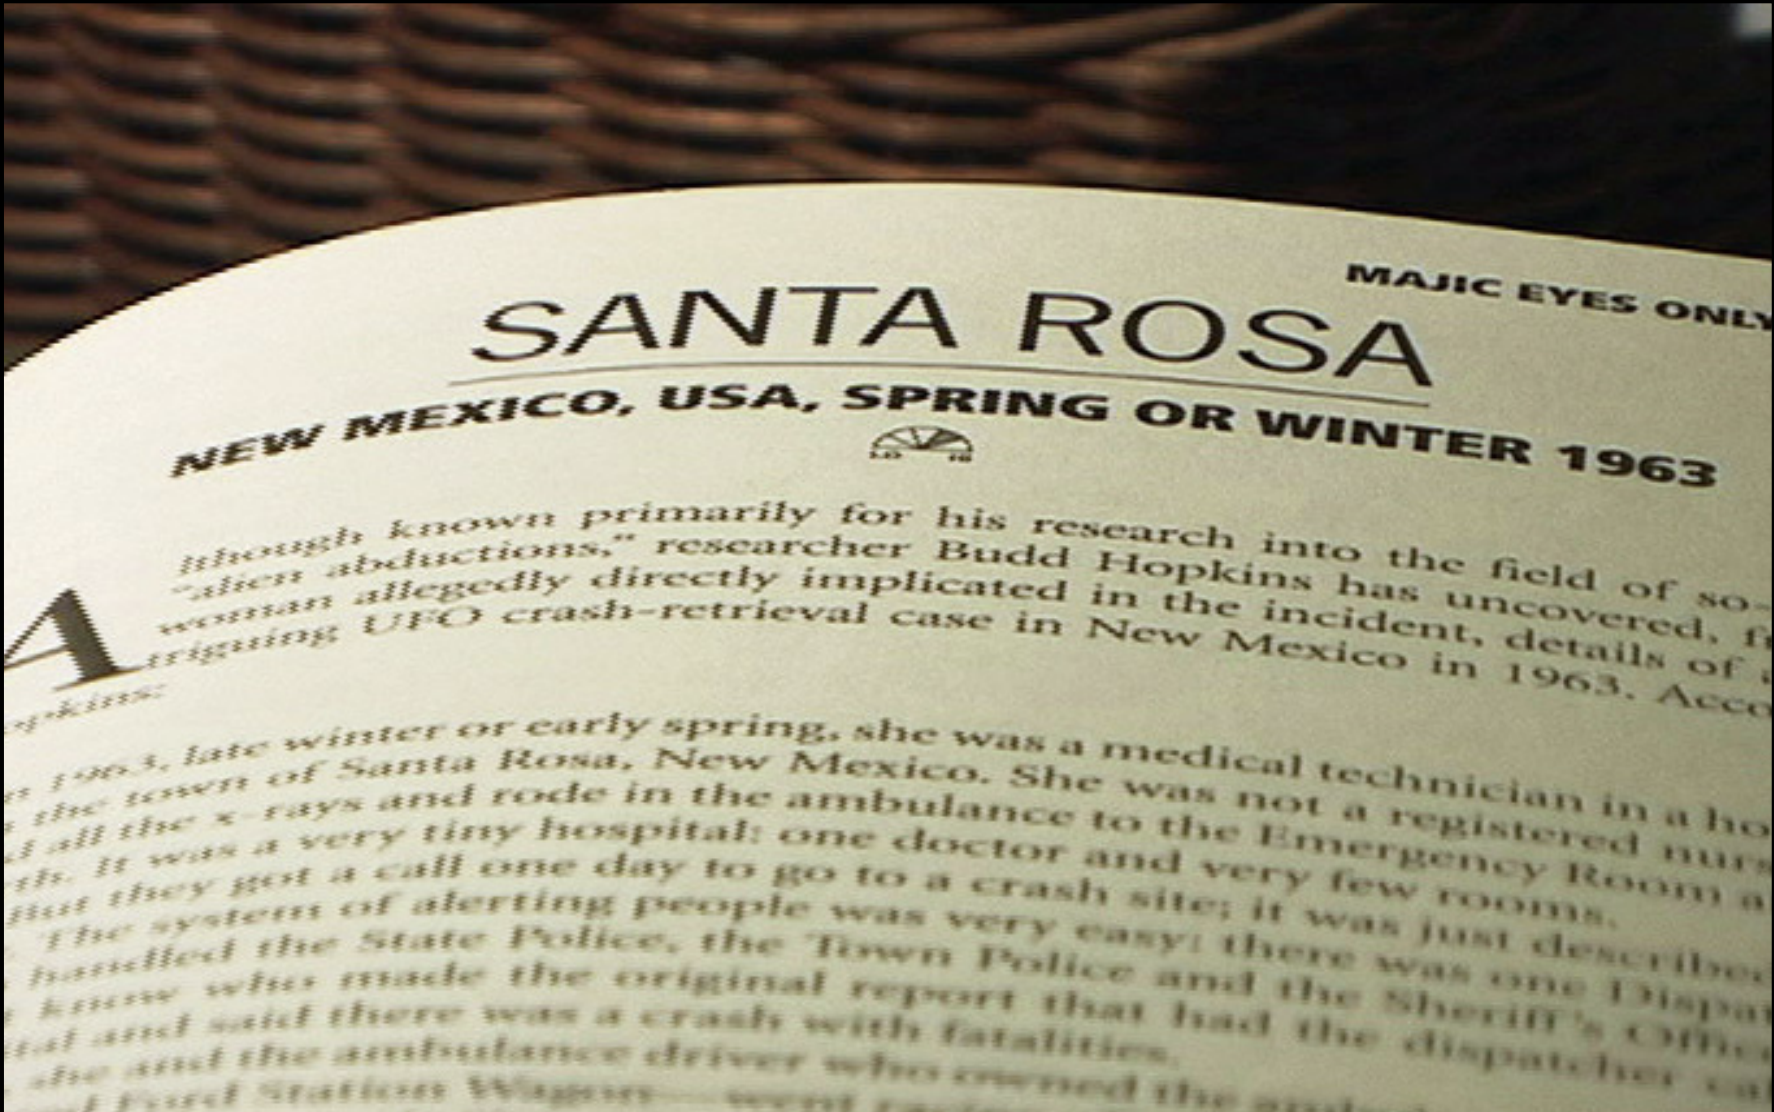 La relation non vérifiée par Hopkins des déclarations de Beanie a gagné son propre chapitre, "Santa Rosa"    dans Majic Eyes Only, un livre couvrant "74 cas de soucoupes écrasées étayés par des preuves convaincantes "    s5Rainey, C : image de documentaire